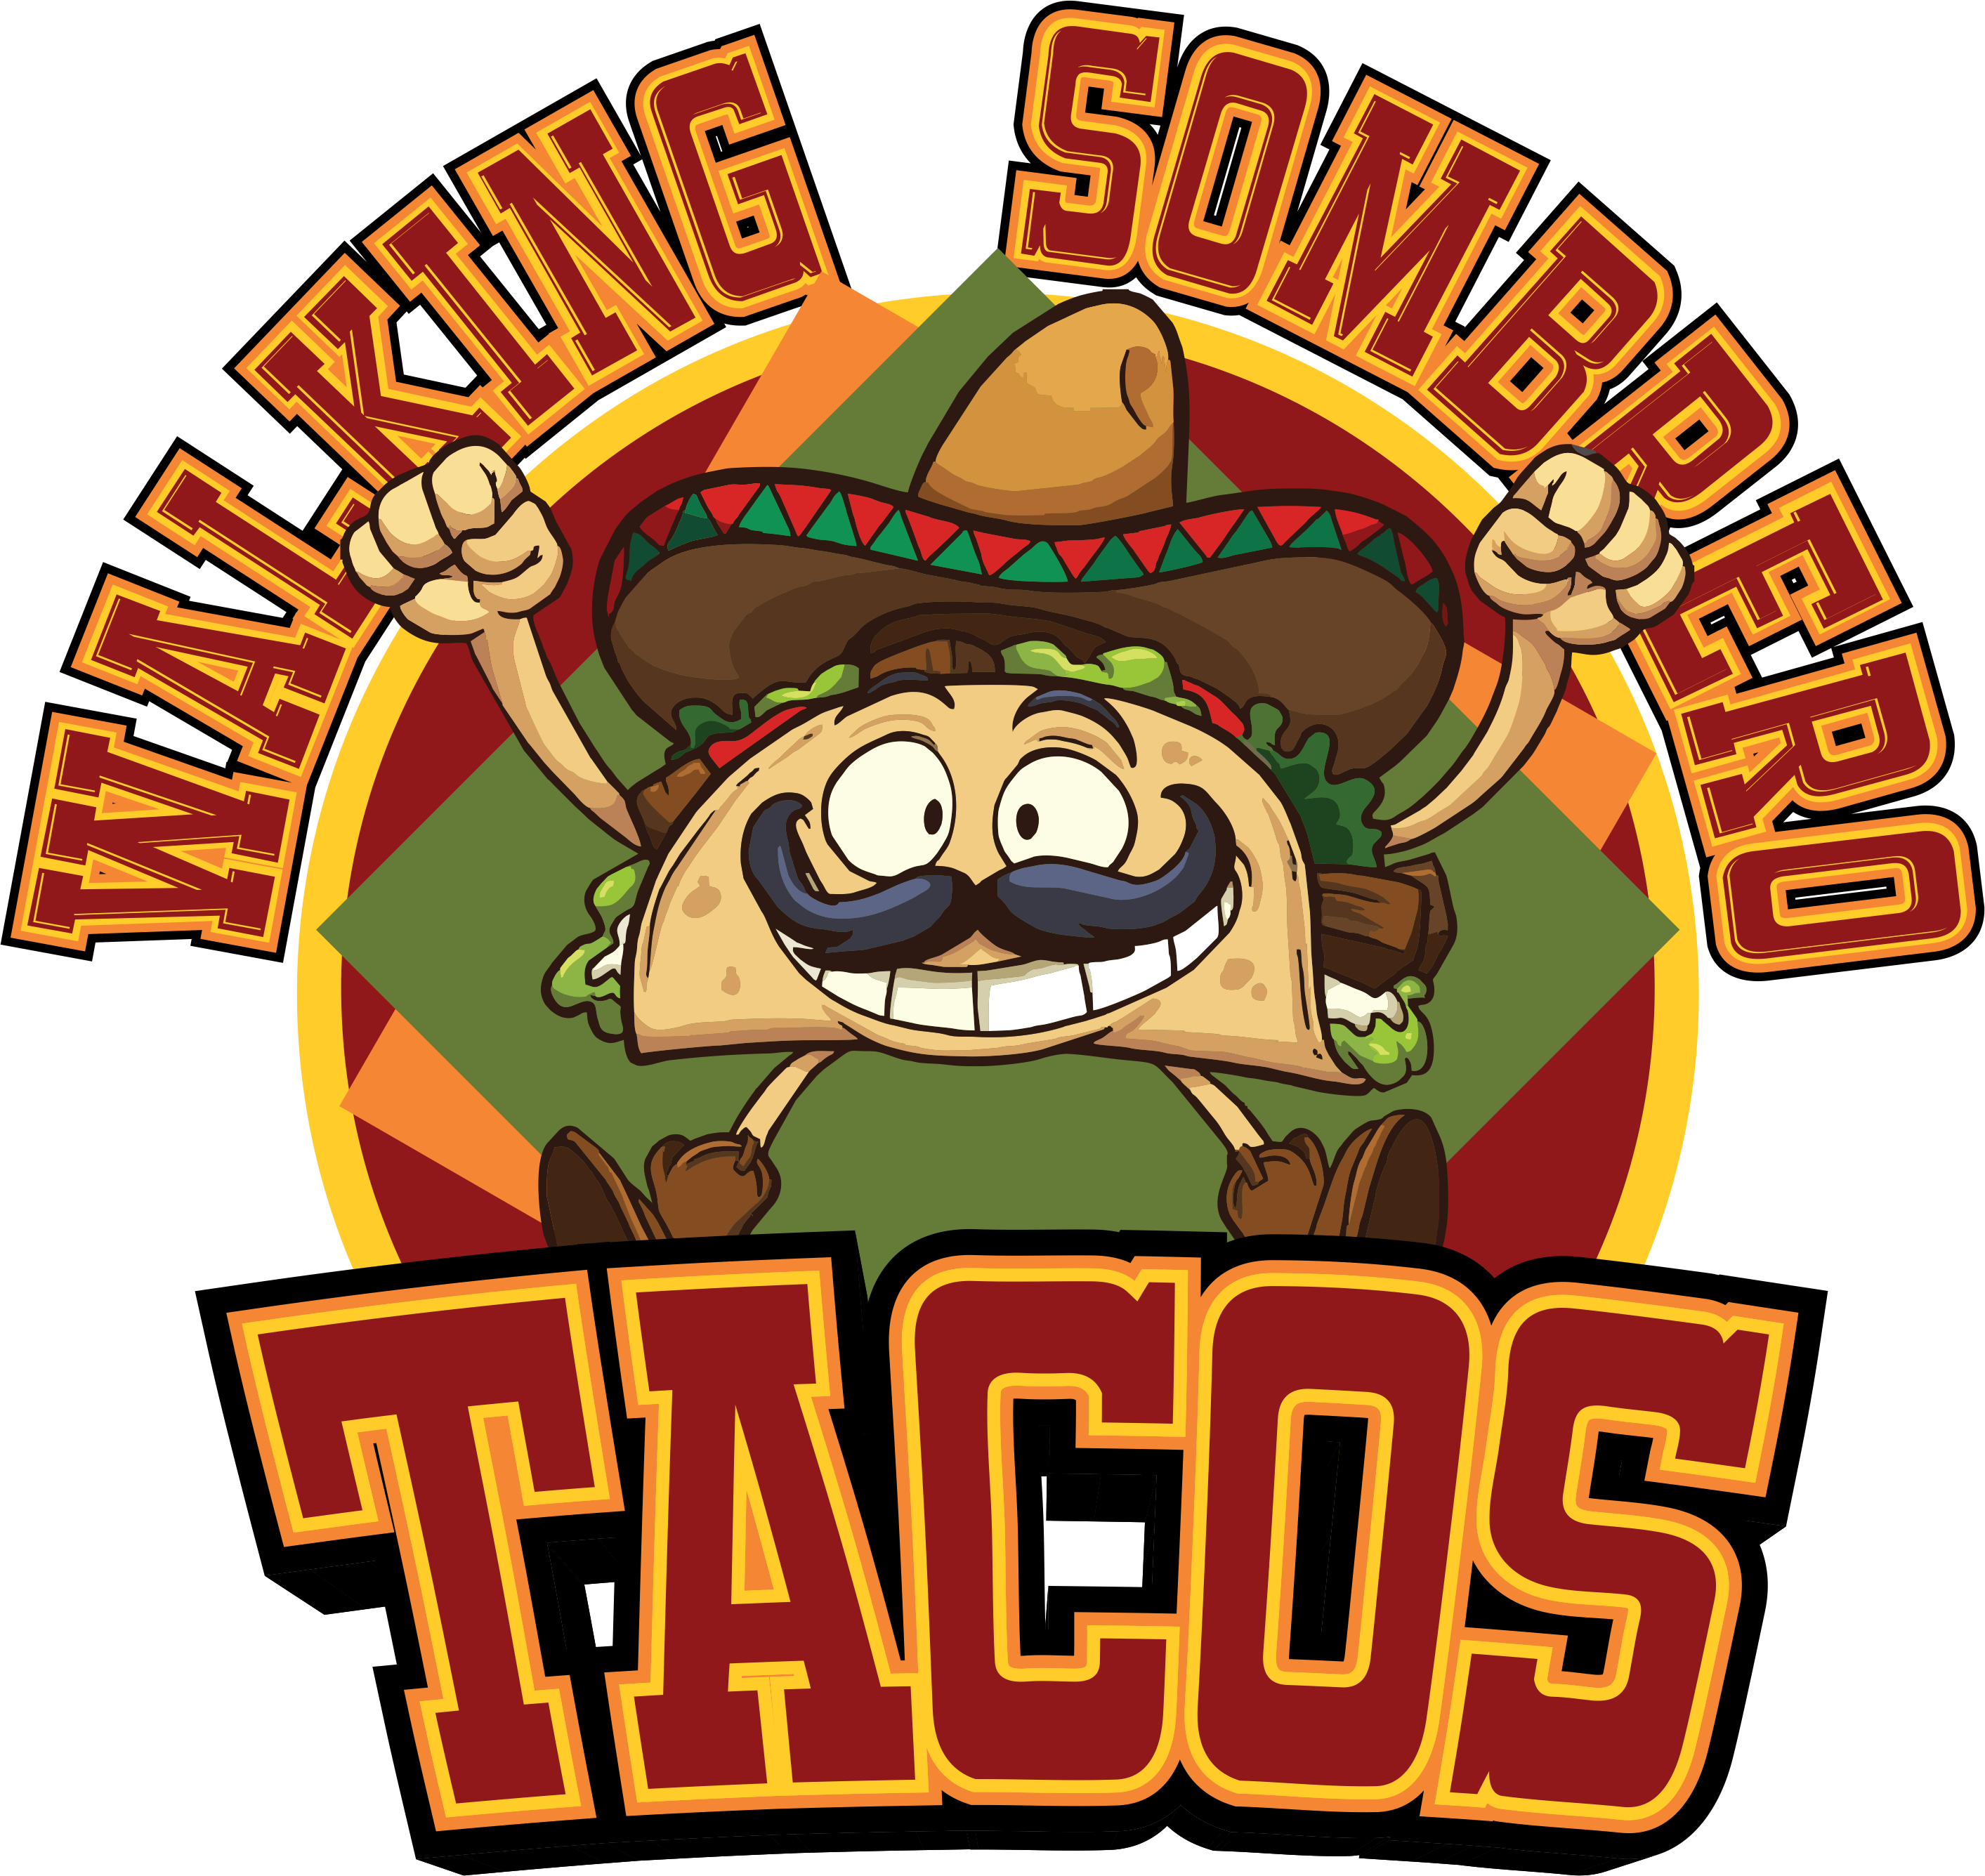 Gallery Walking Sombrero Tacos, LLC.